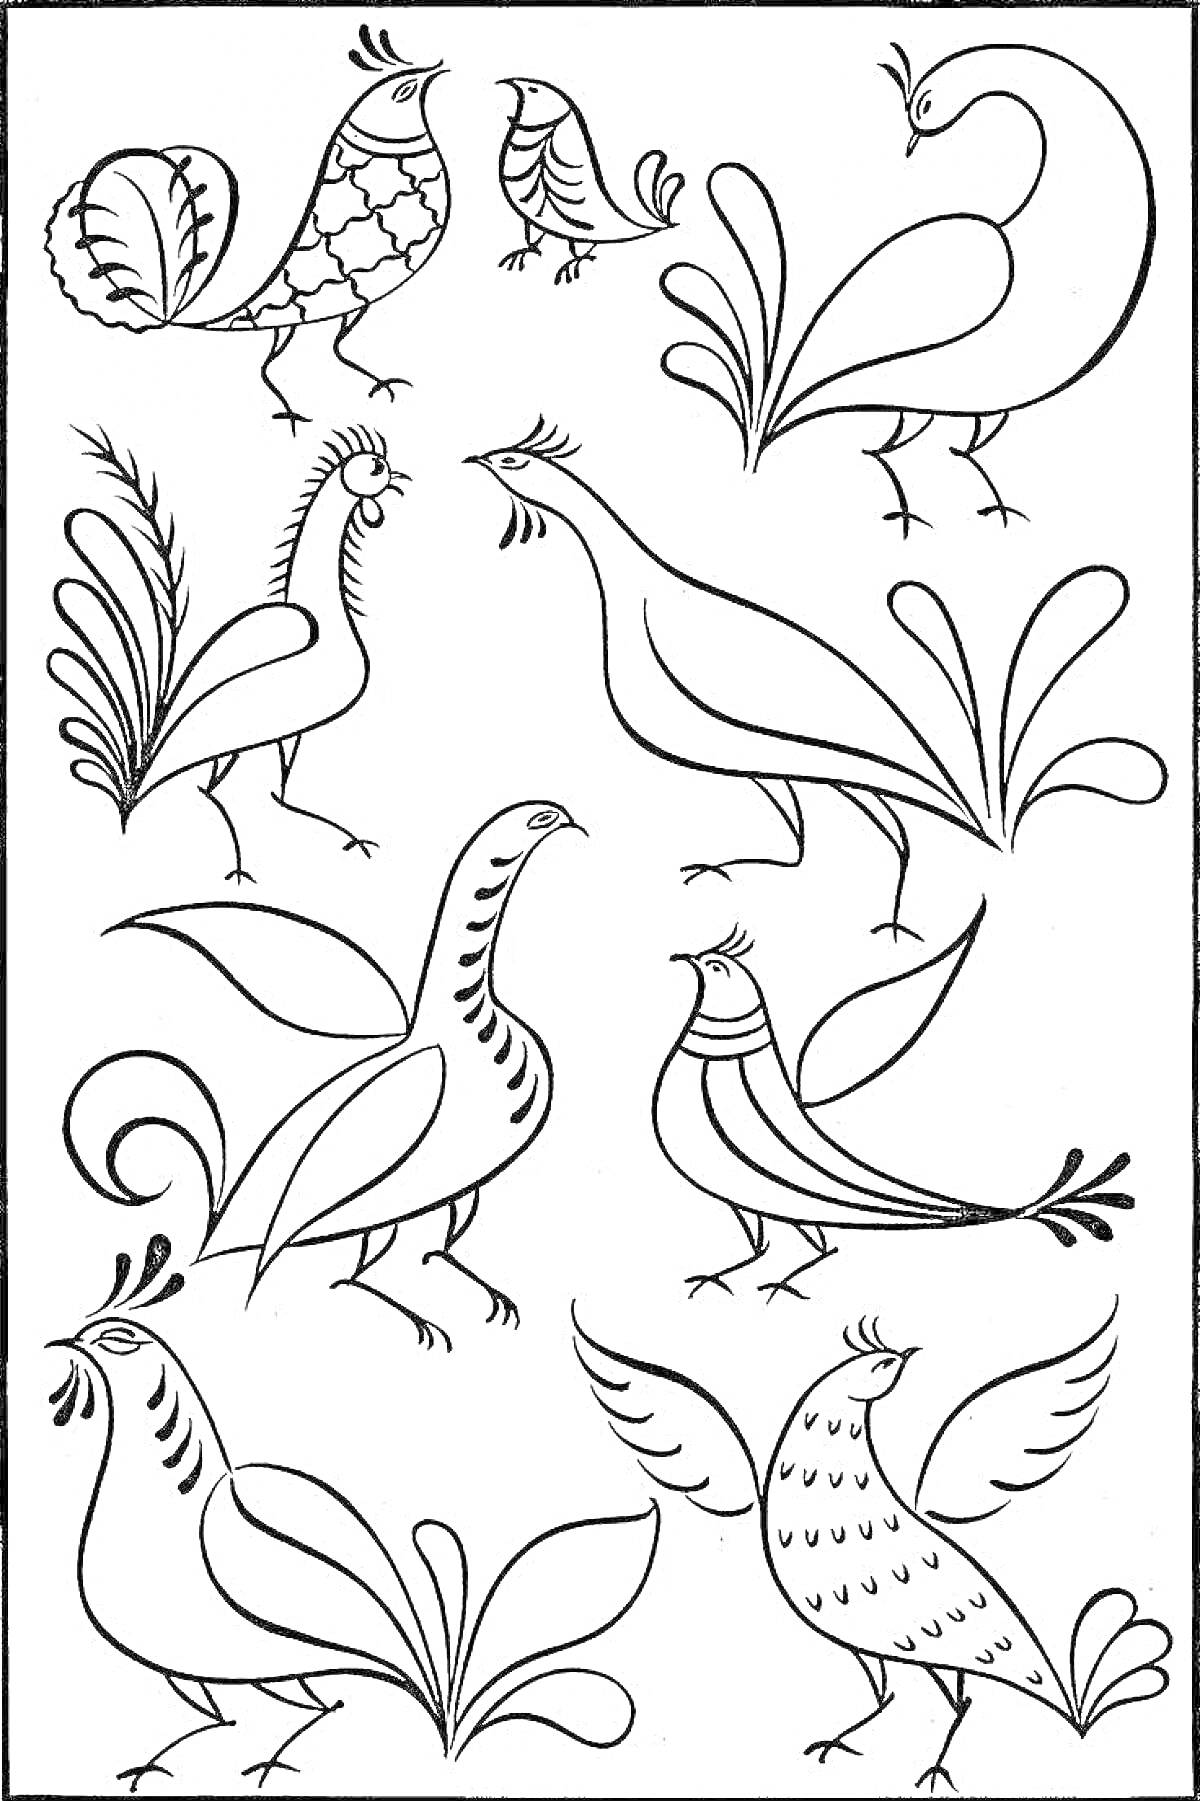 Раскраска Раскраска с элементами пермогорской росписи: восемь птиц с орнаментальными хвостами и крыльями